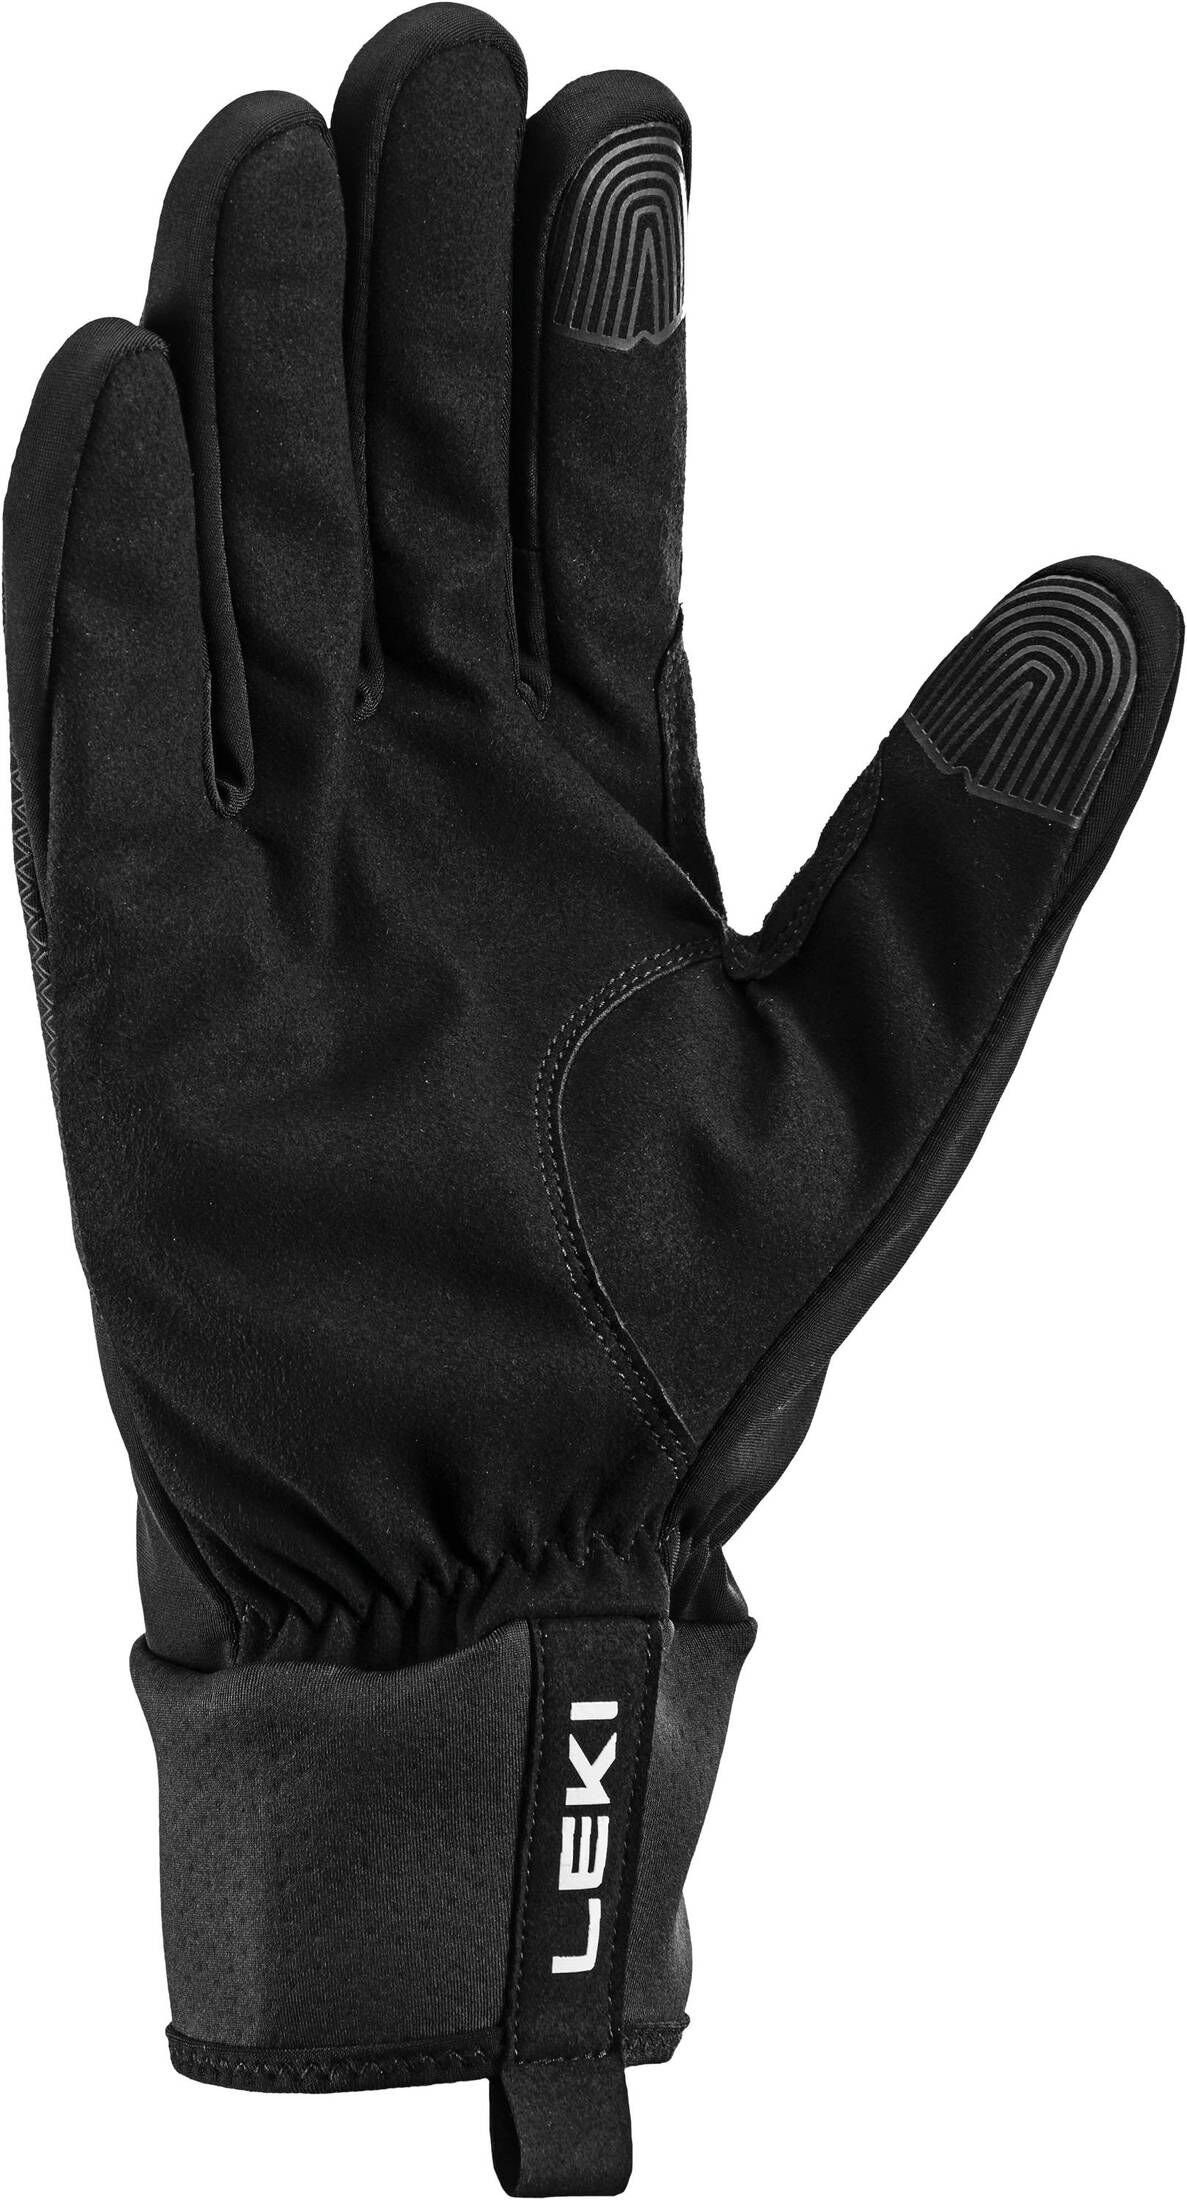 Langlaufhandschuhe Langlauf-Handschuhe THERMO Leki CC Herren